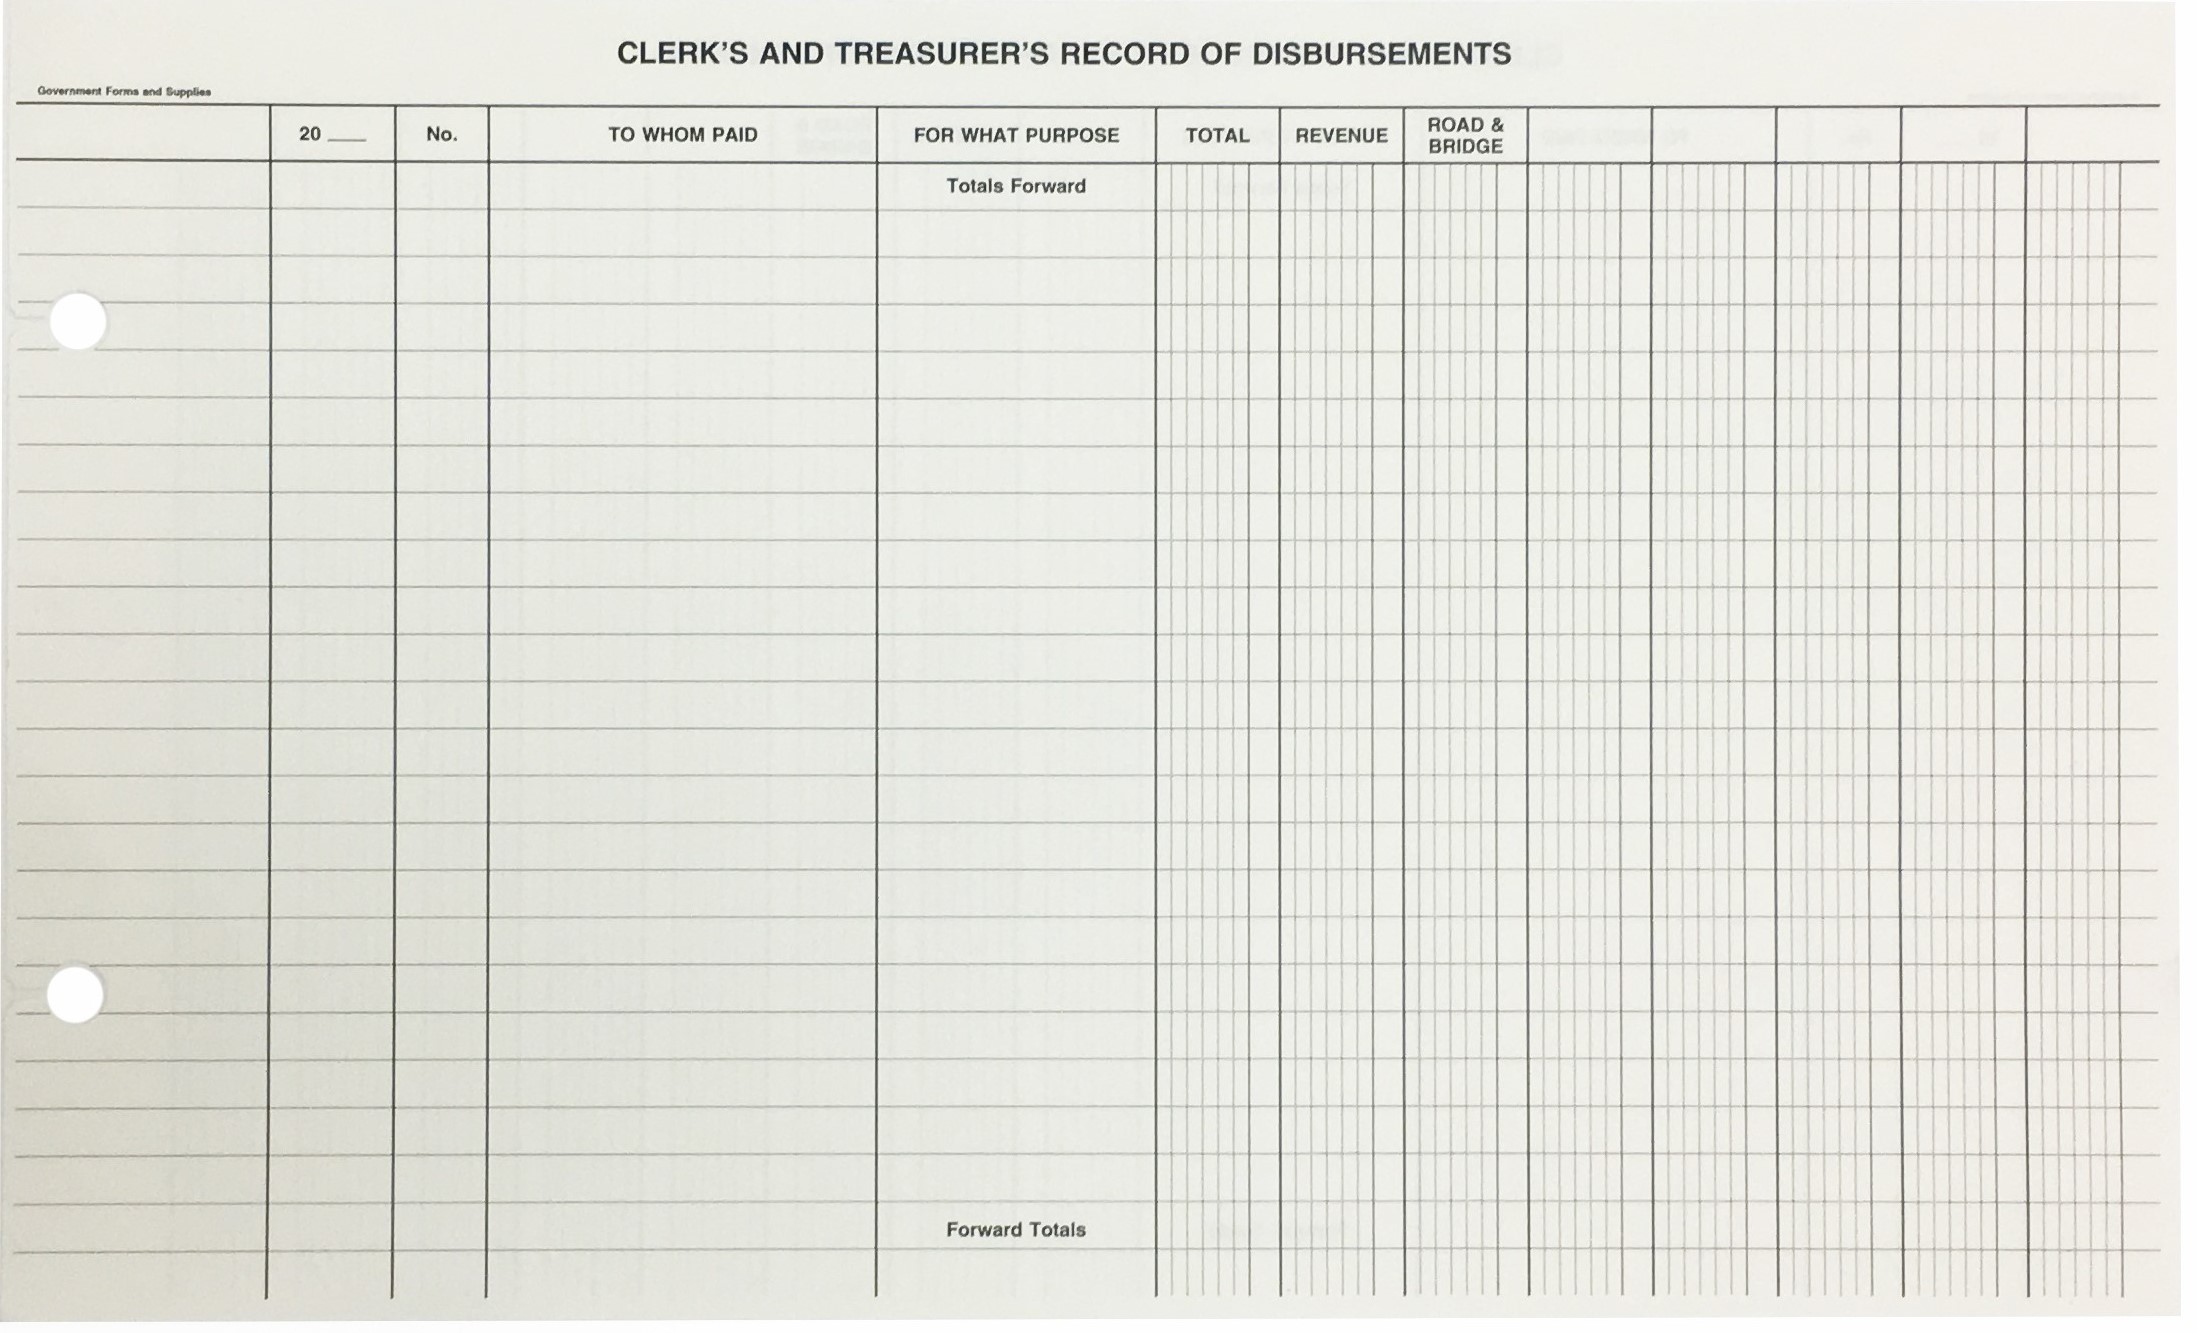 Township Record of Disbursement